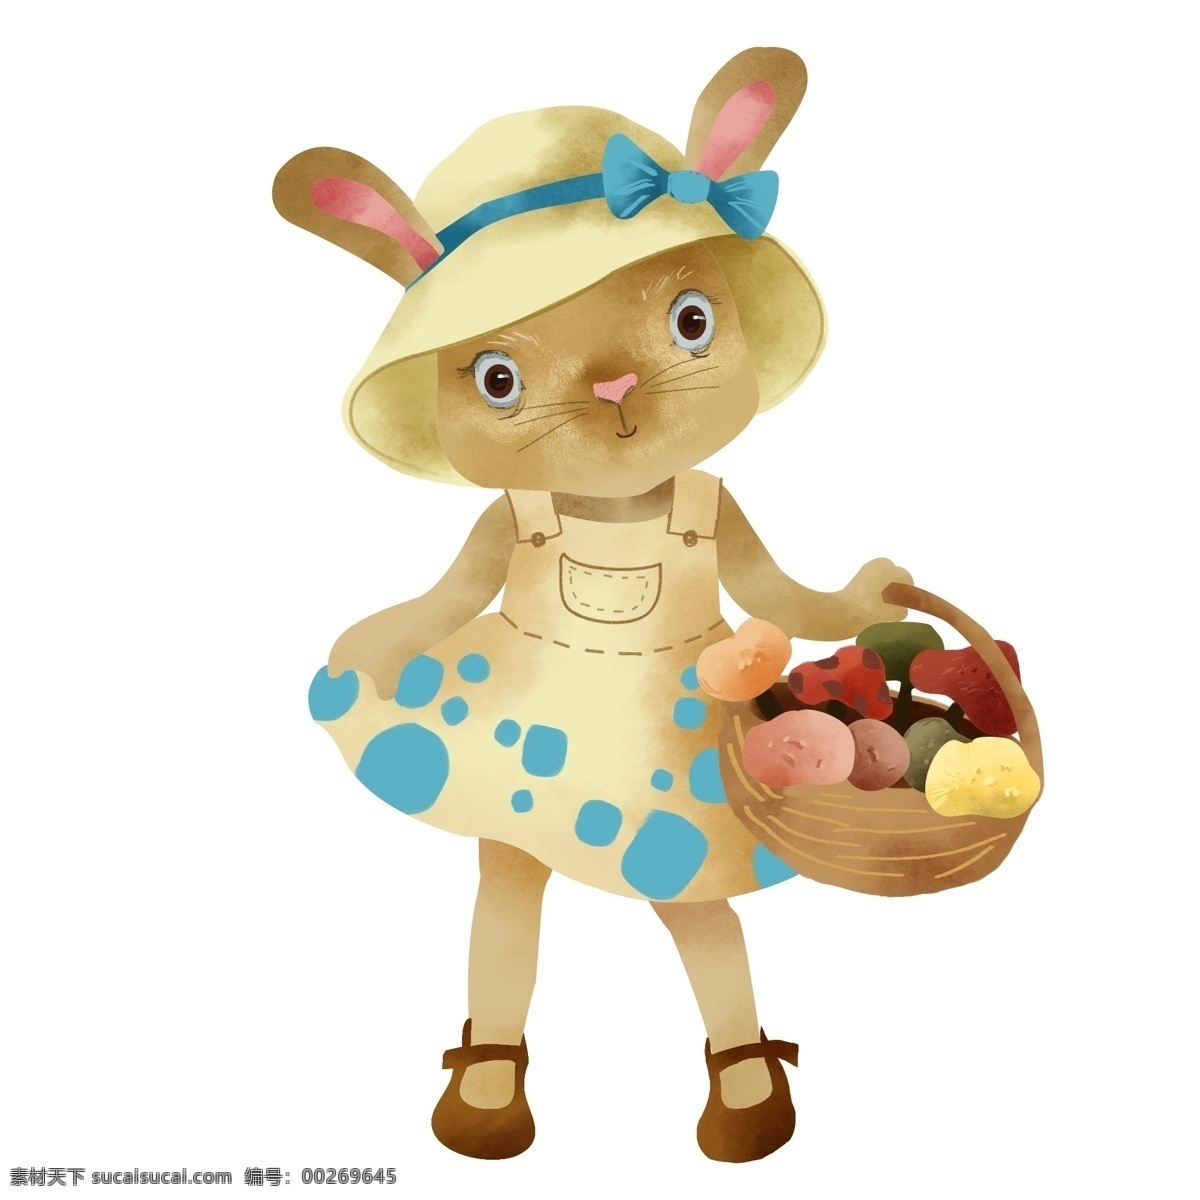 提水 果篮 兔子 卡通 手绘 插画 戴帽子的兔子 篮子 穿着 裙子 兔子卡通手绘 可爱兔子 卡通手绘插画